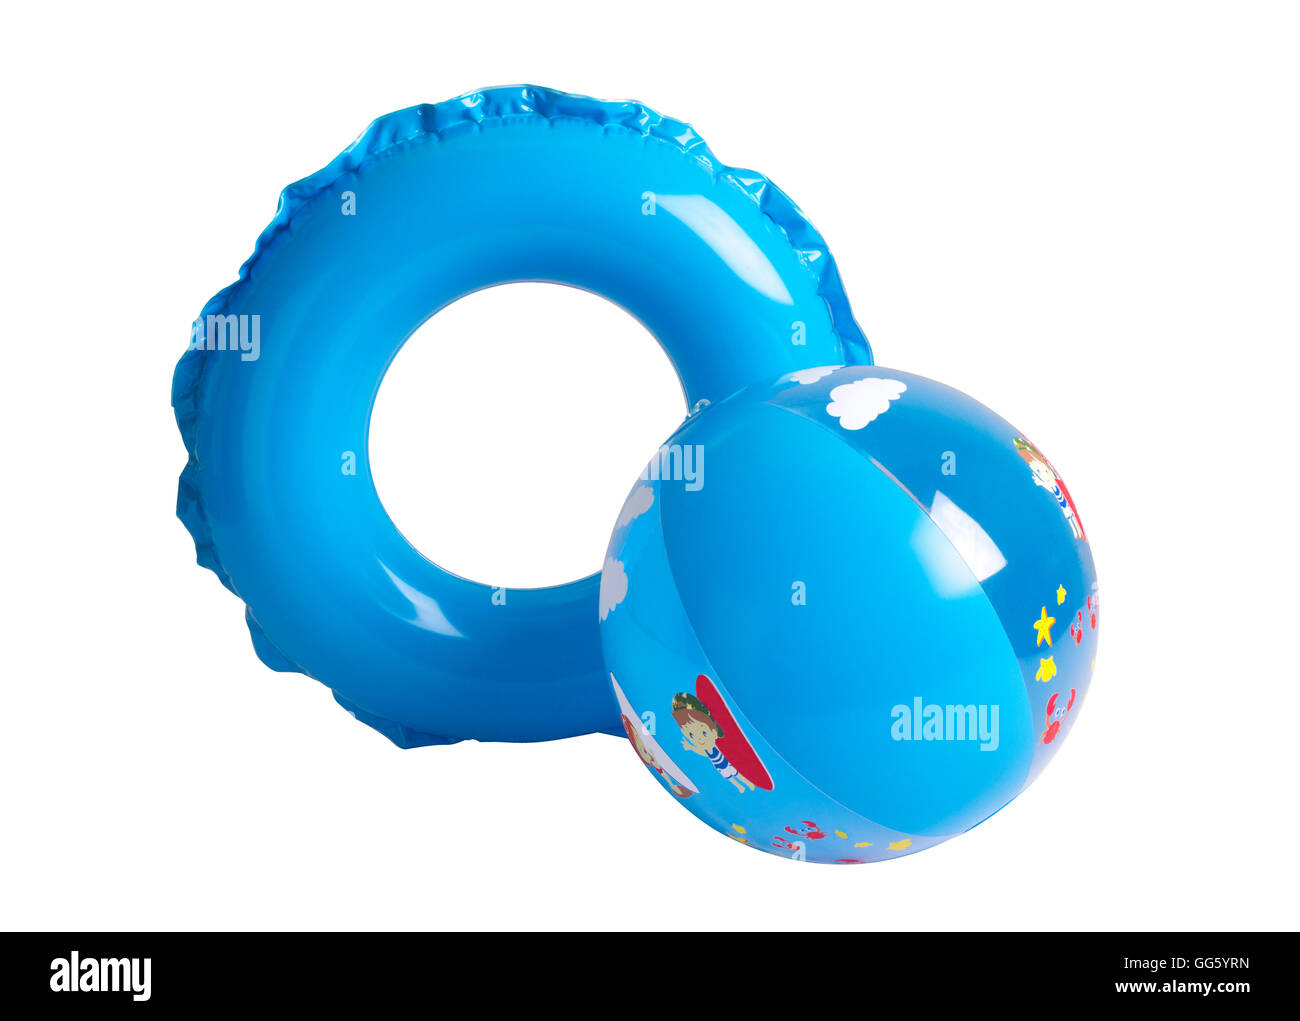 Ballon de plage gonflable et circle isolé sur fond blanc Banque D'Images